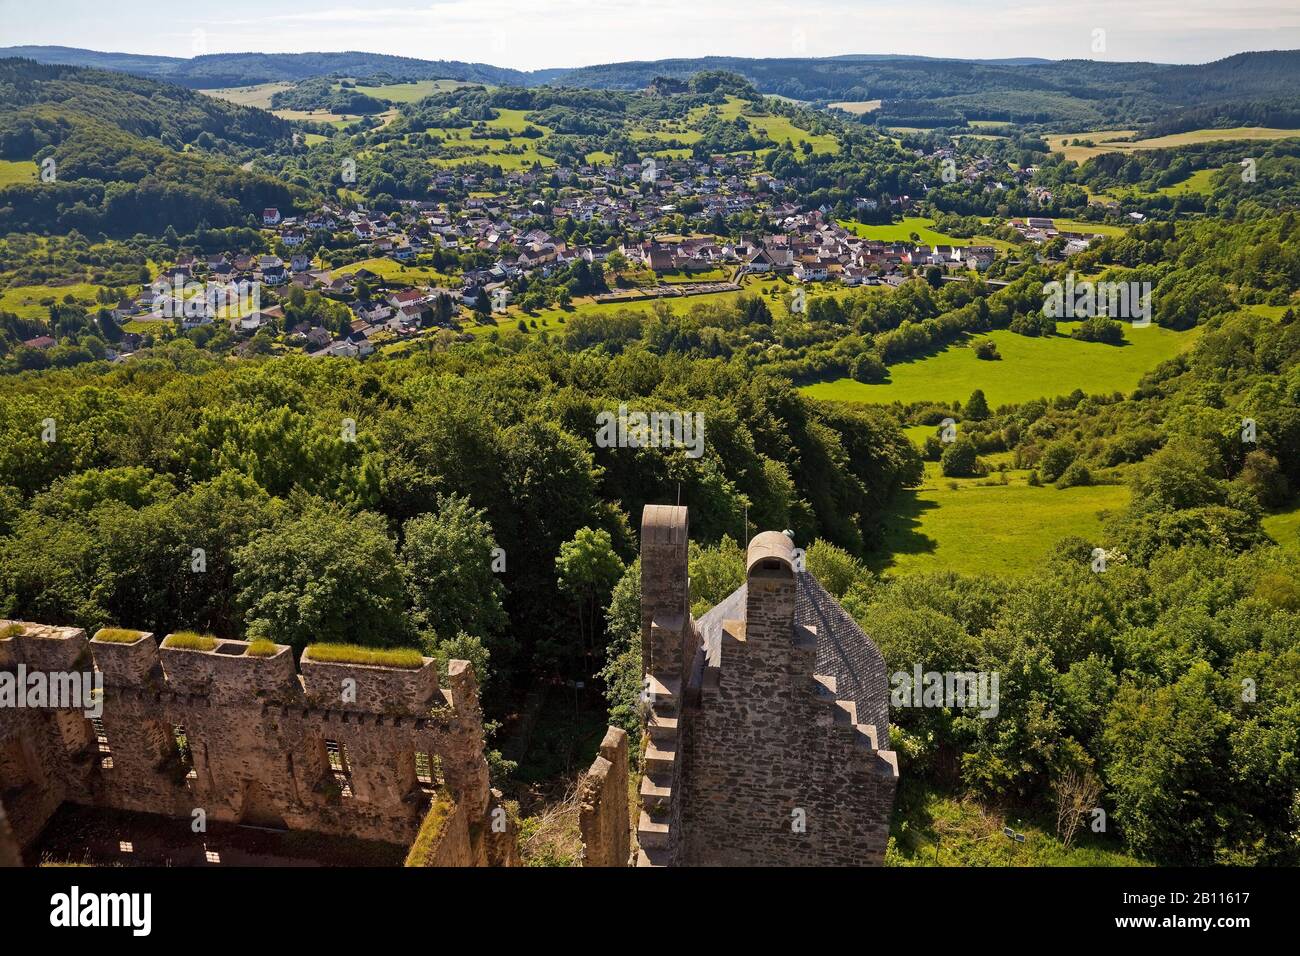 Vue du château de Kasselburg à Pelm, Allemagne, Rhénanie-Palatinat, Vulkaneifel, Pelm Banque D'Images